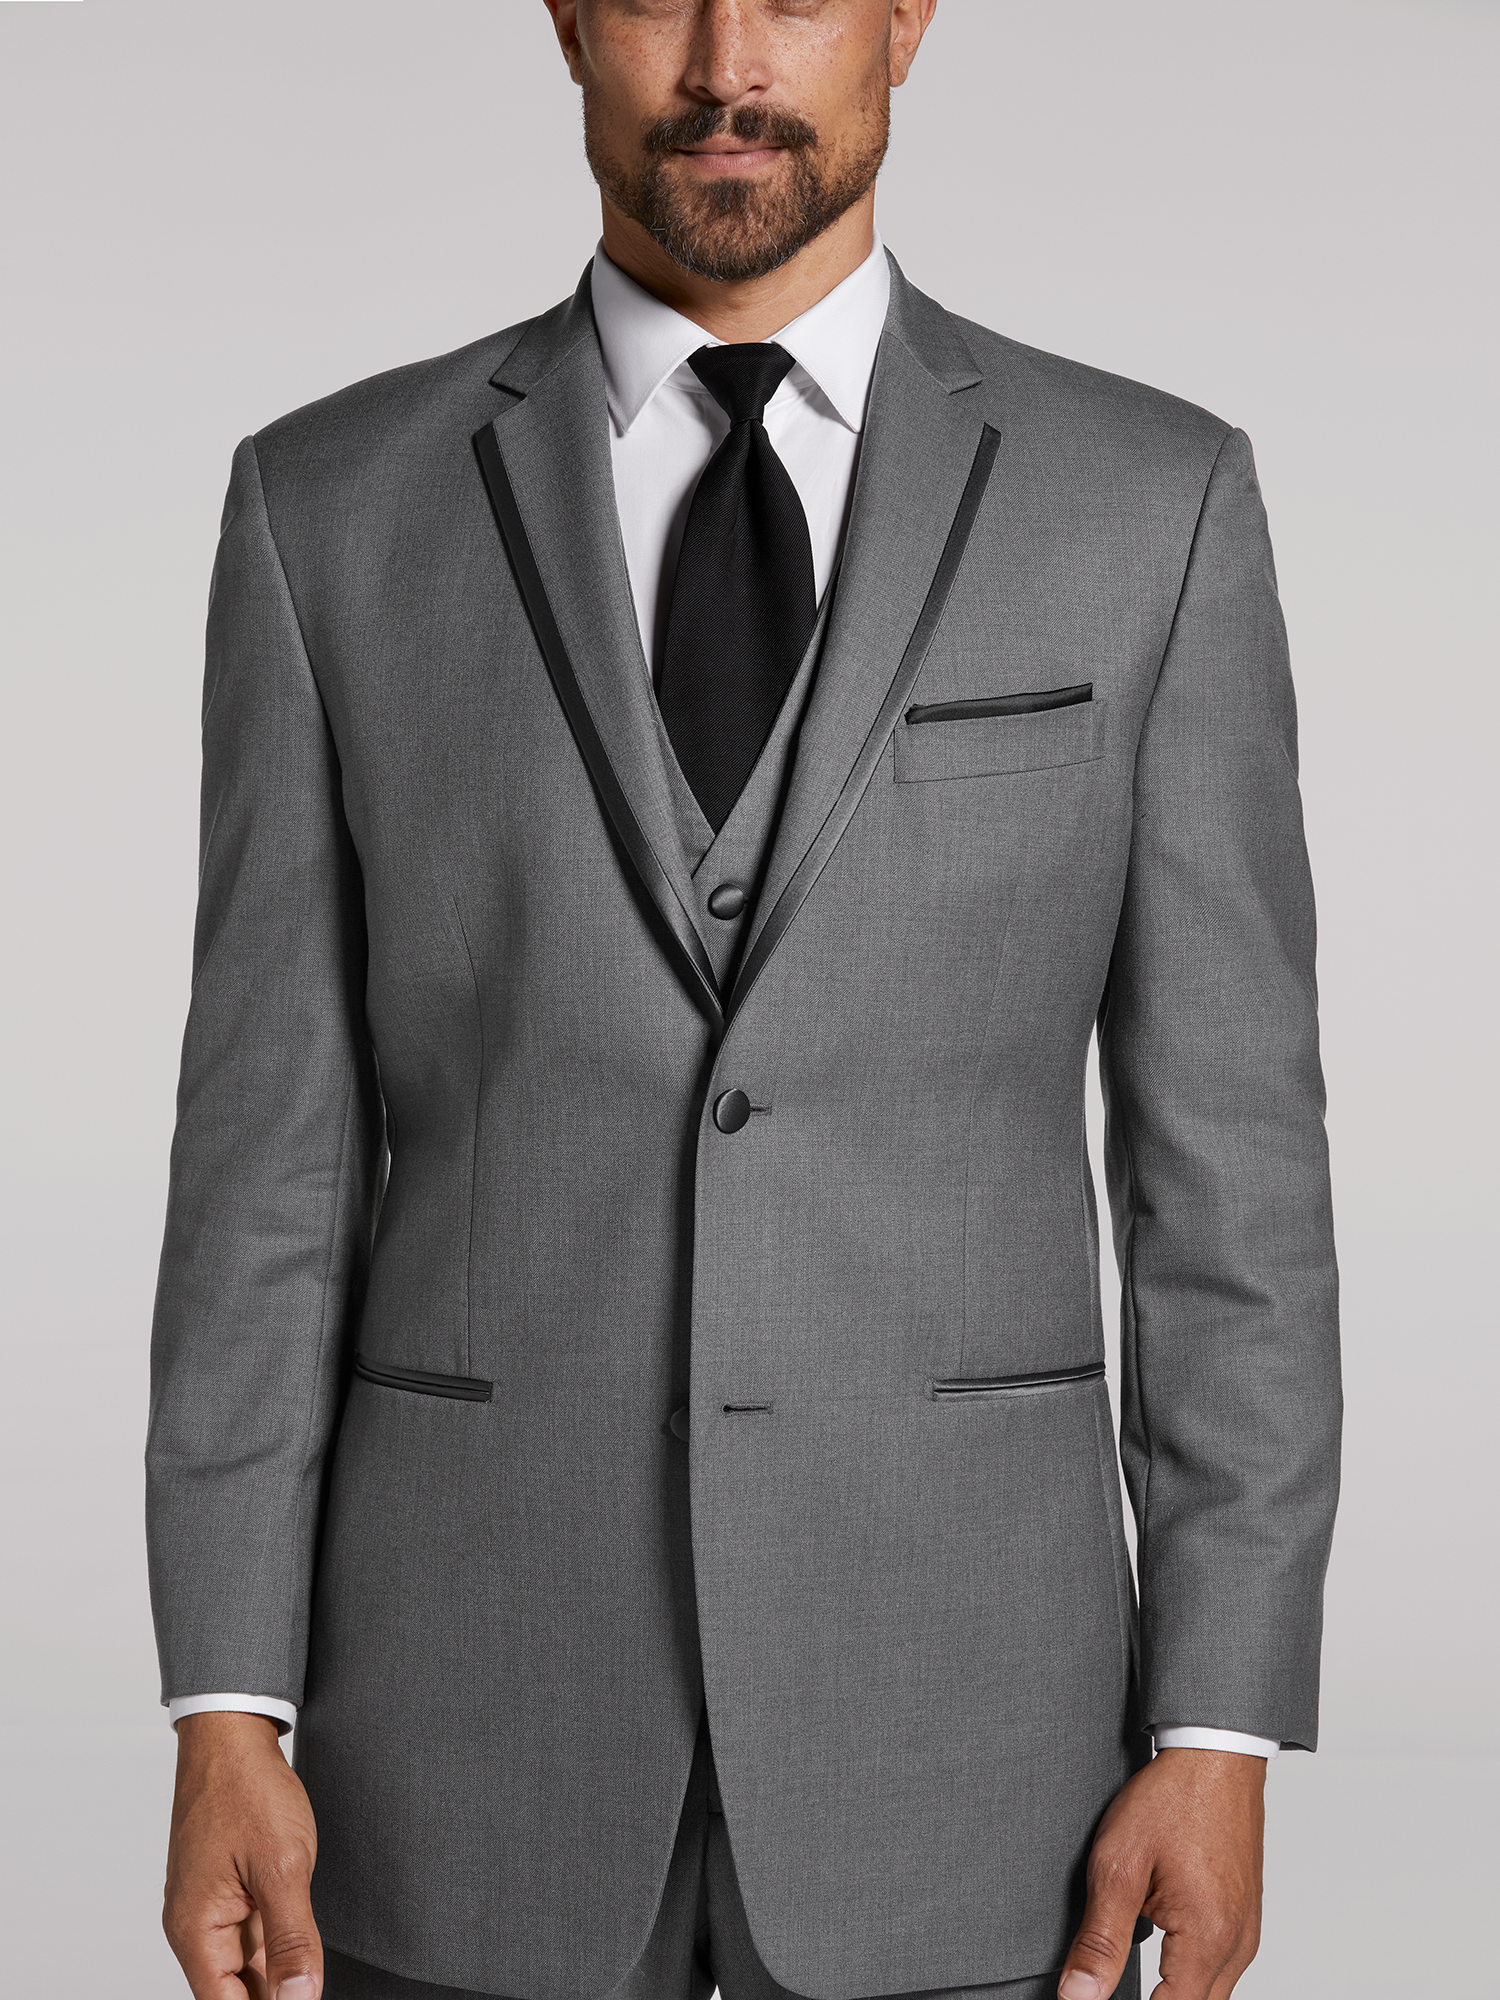 Grey Notch Lapel Tuxedo by Joseph Abboud | Tuxedo Rental